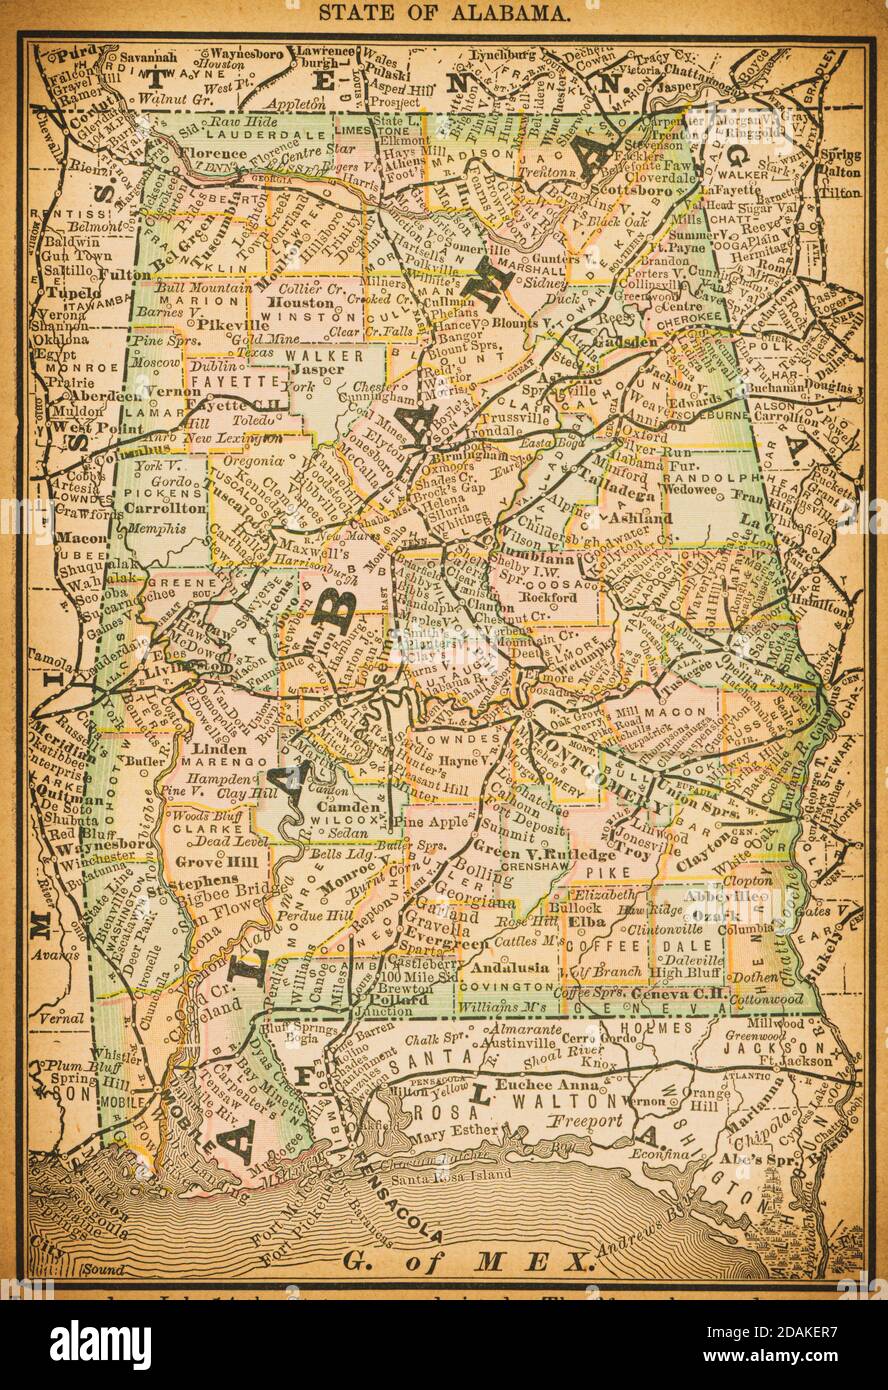 Carte de l'État de l'Alabama du XIXe siècle. Publié dans nouvel Atlas du dollar des États-Unis et Dominion du Canada. (Rand McNally & Co's, Chicago, 1884). Banque D'Images